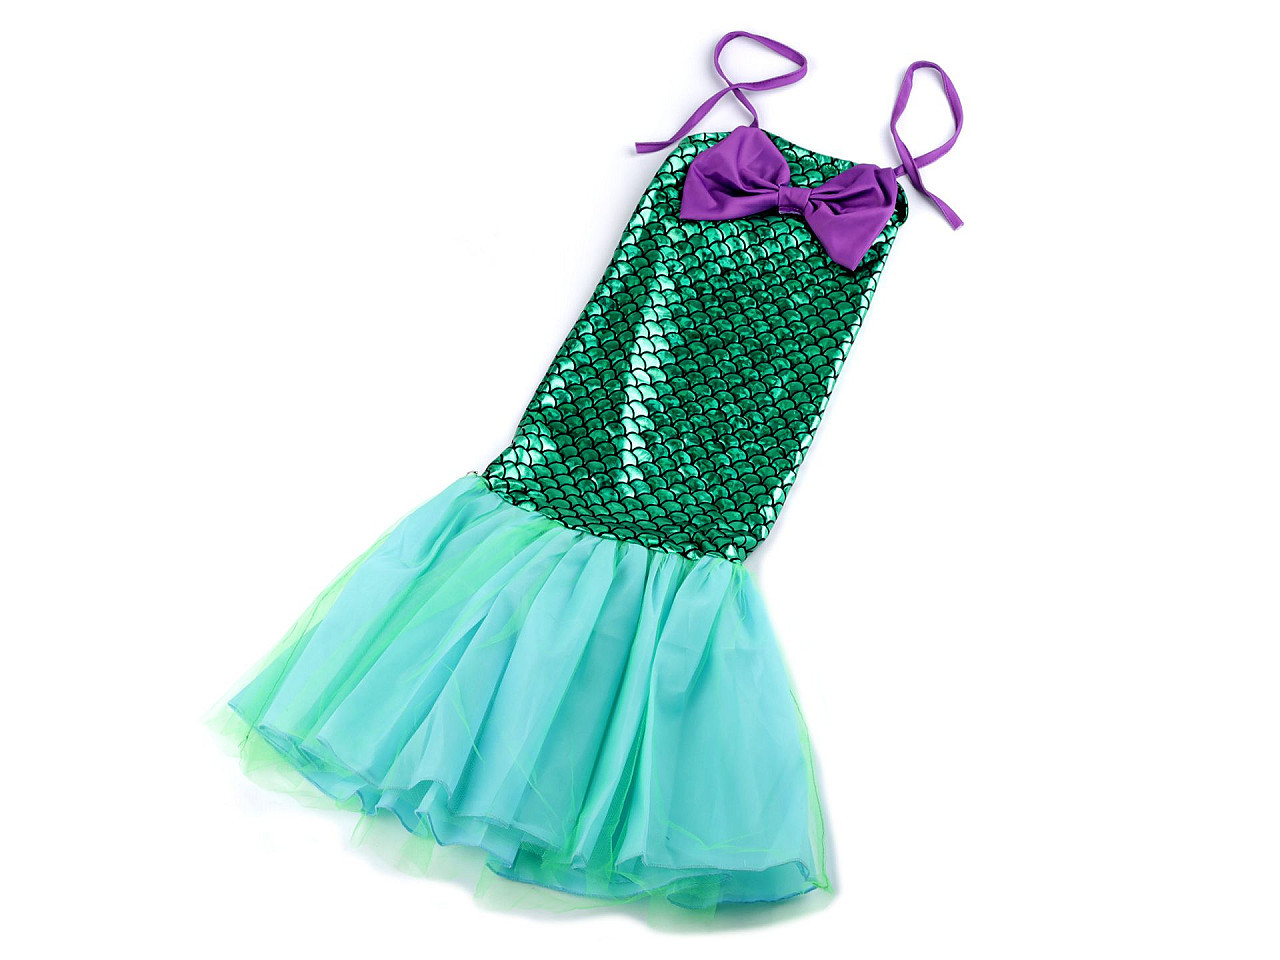 Karnevalový kostým - mořská panna, barva 2 (vel. M) zelená mořská